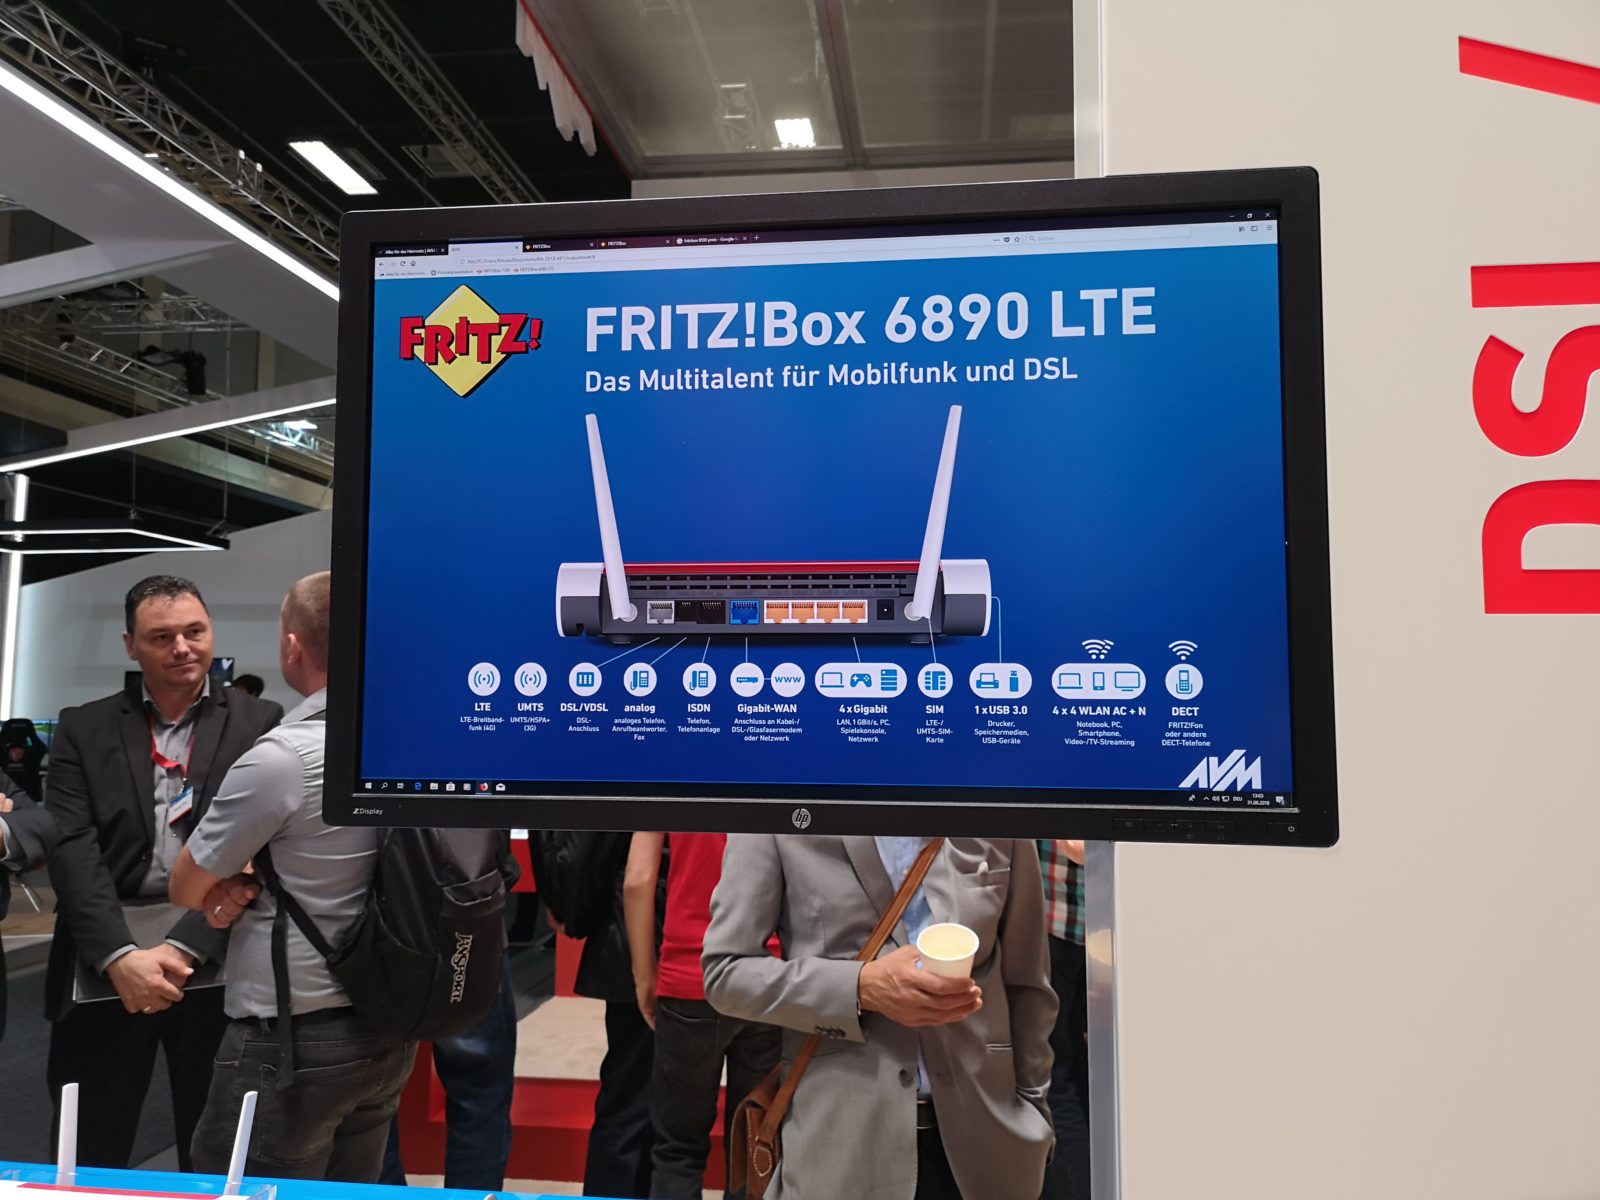 Le novità di FRITZ! AVM per internet, rete mesh WiFi, Smart Home e telefonia a IFA 2018